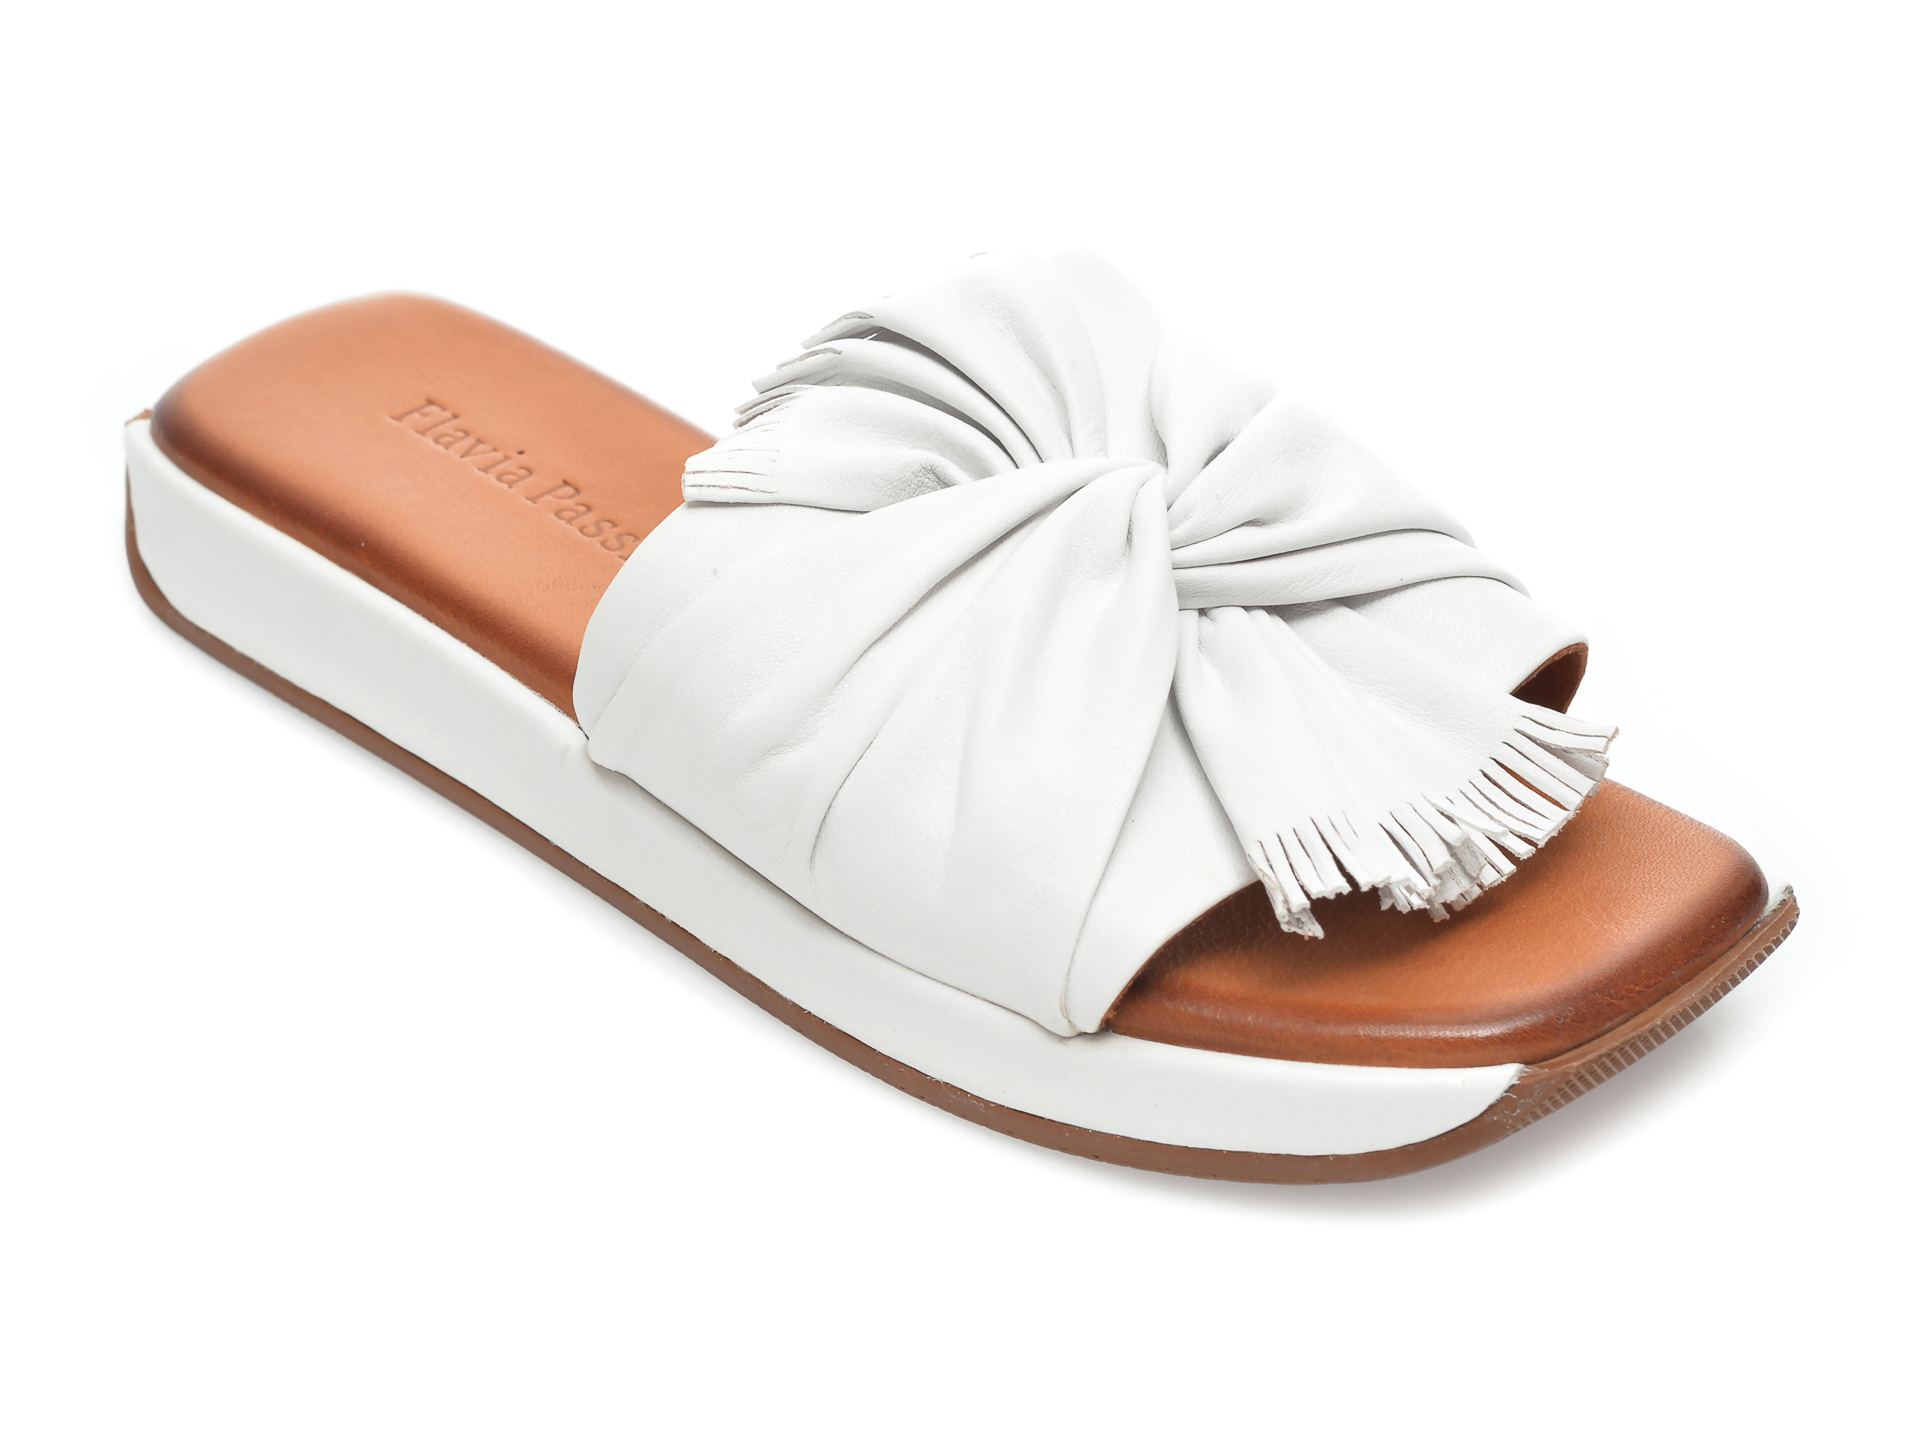 Papuci FLAVIA PASSINI albi, 5001, din piele naturala